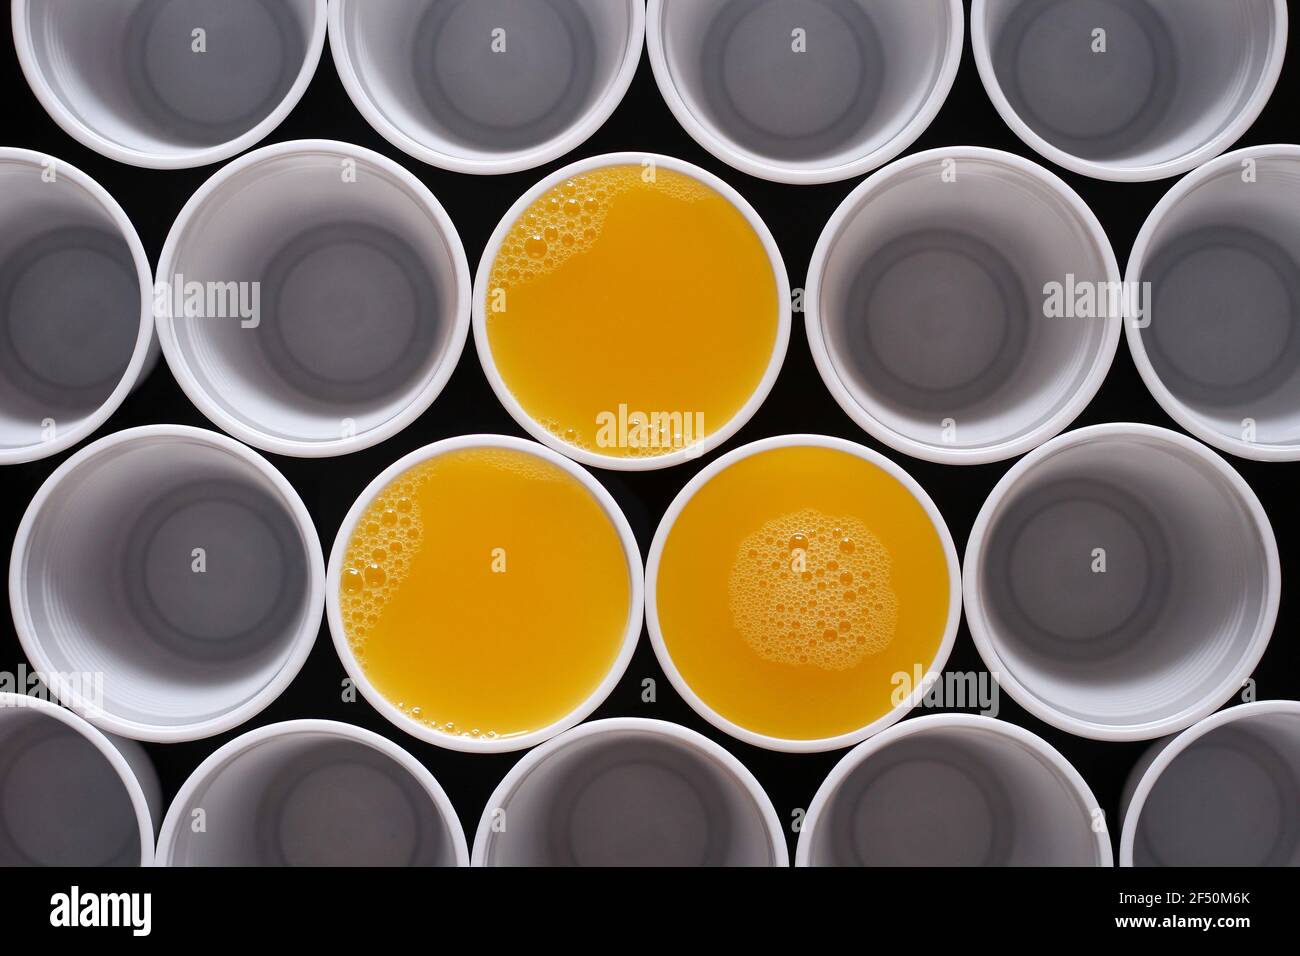 Tre tazze monouso in plastica riempite di succo d'arancia, tra le tante altre, viste dall'alto Foto Stock